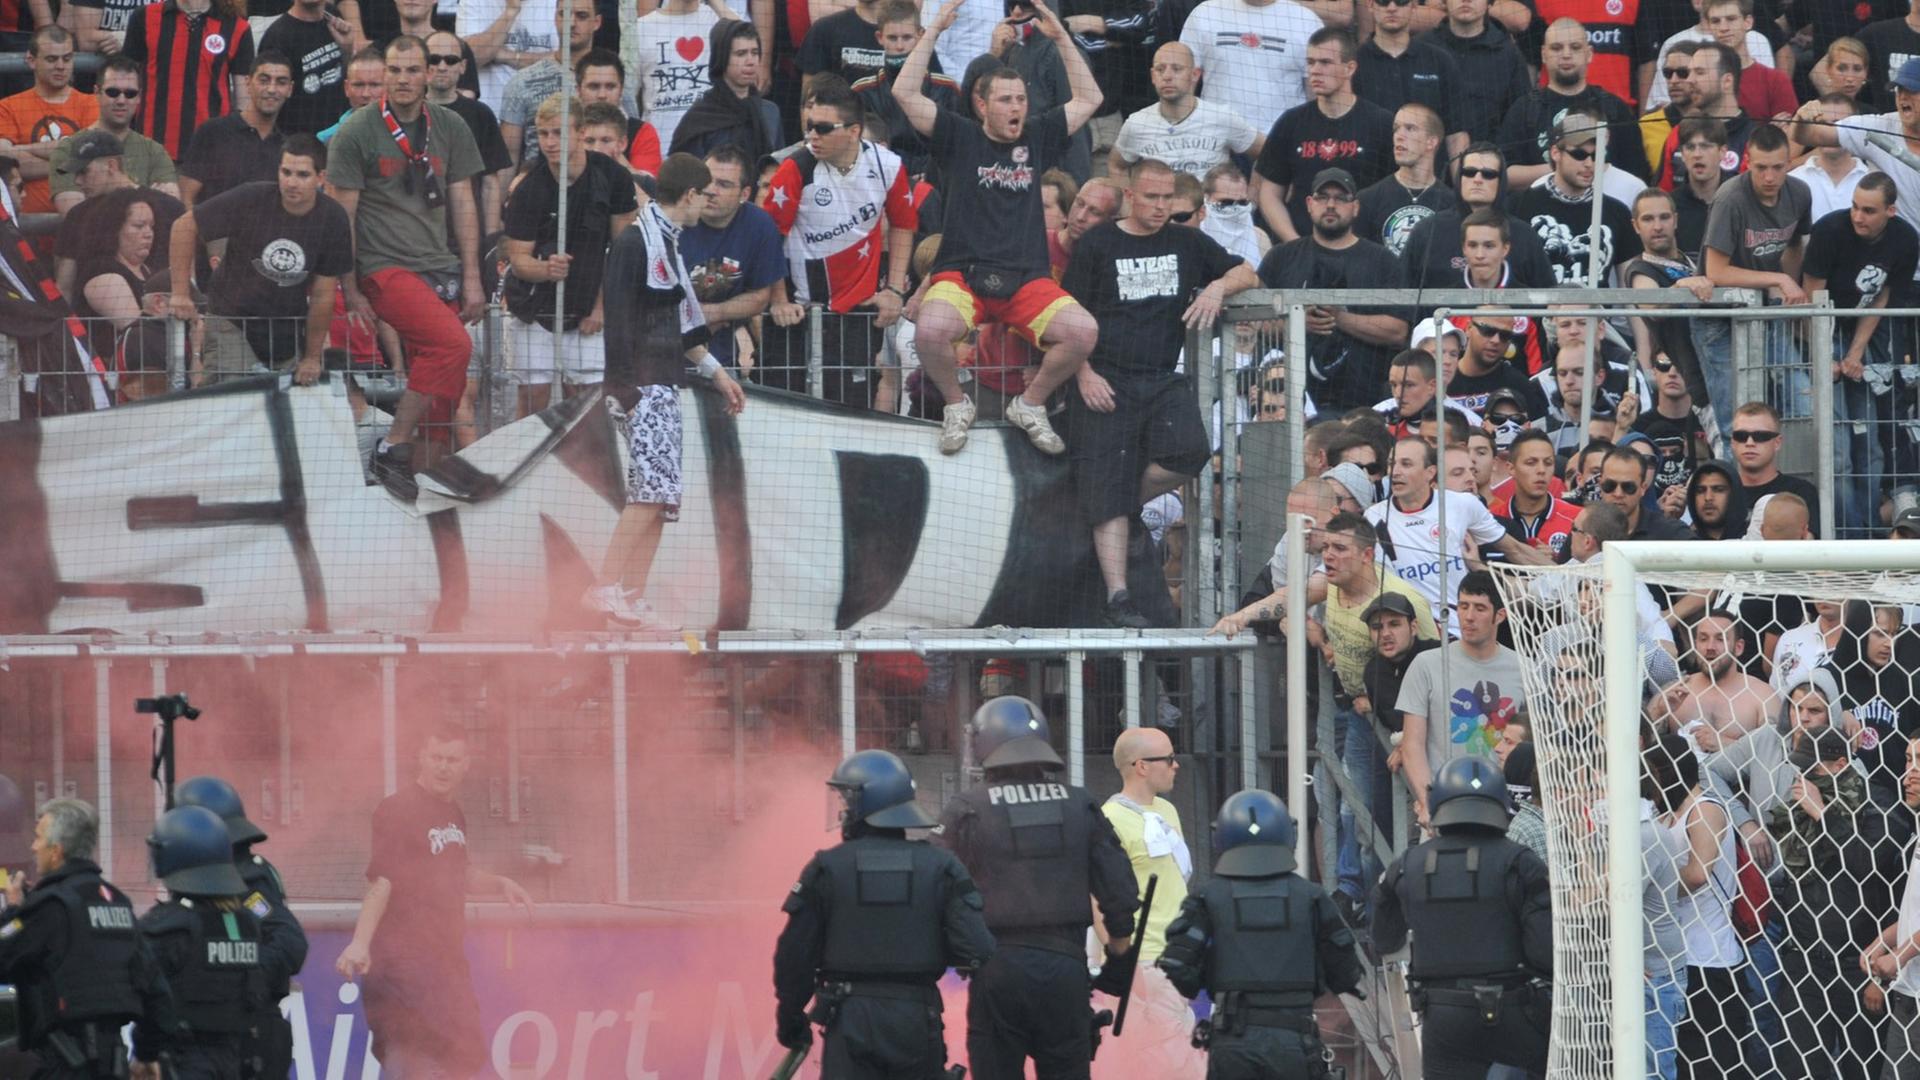 Polizeikräfte gehen nach einem Fußball-Spiel gegen randalierende Fans vor.